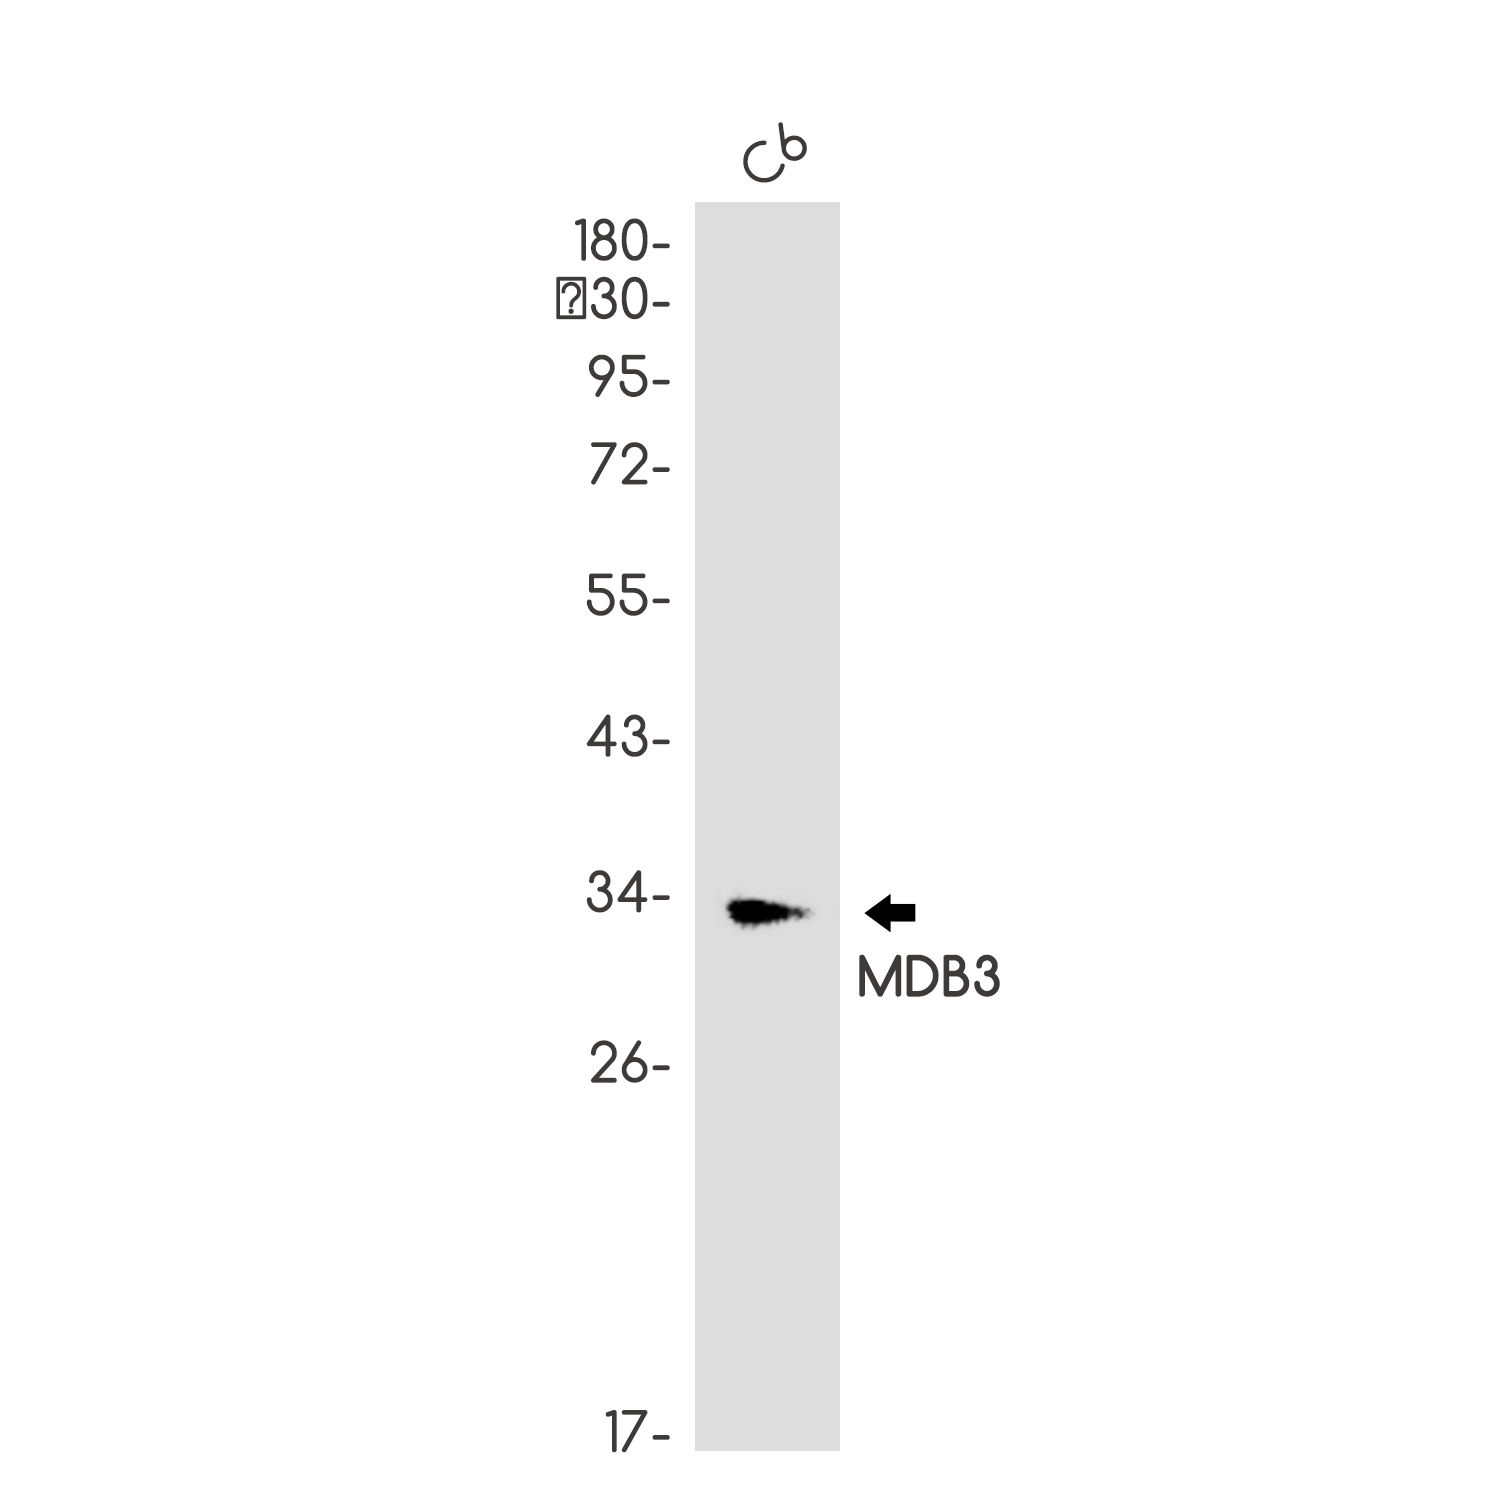 Western blot analysis of MDB3 in C6 lysates using MDB3 antibody.